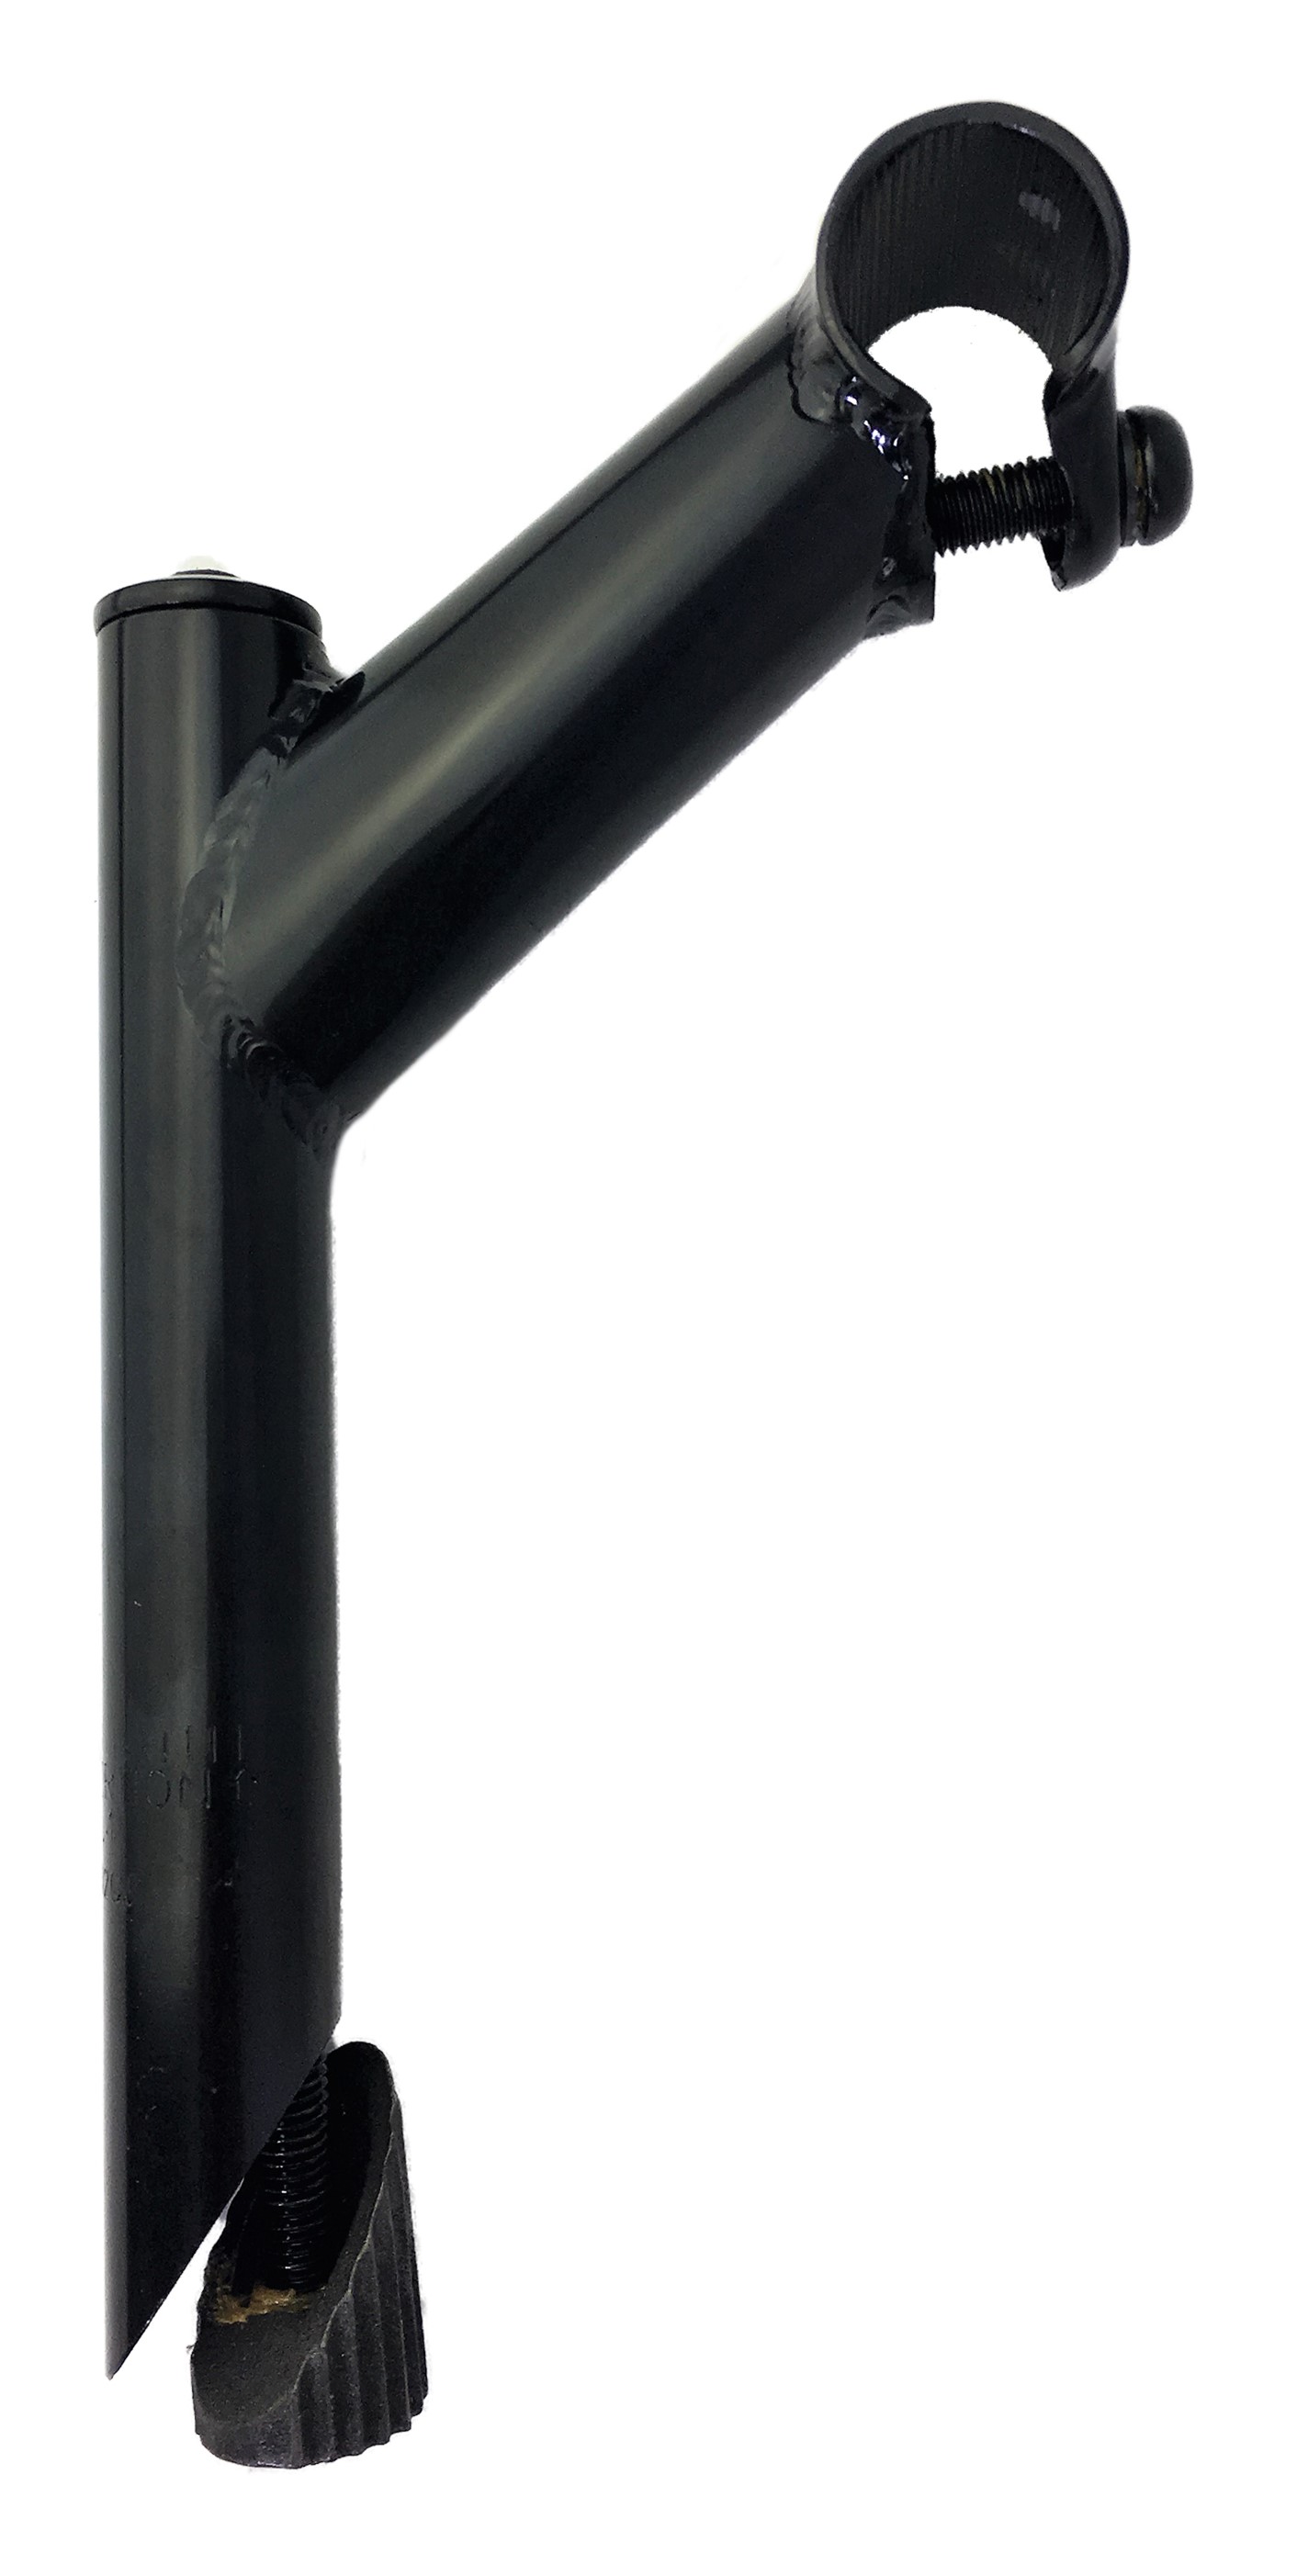 Tija del manillar 25,4 - 25,4, eje de acero con sujeción mediante 1 tornillo en negro Humpert Ergotec CV 102